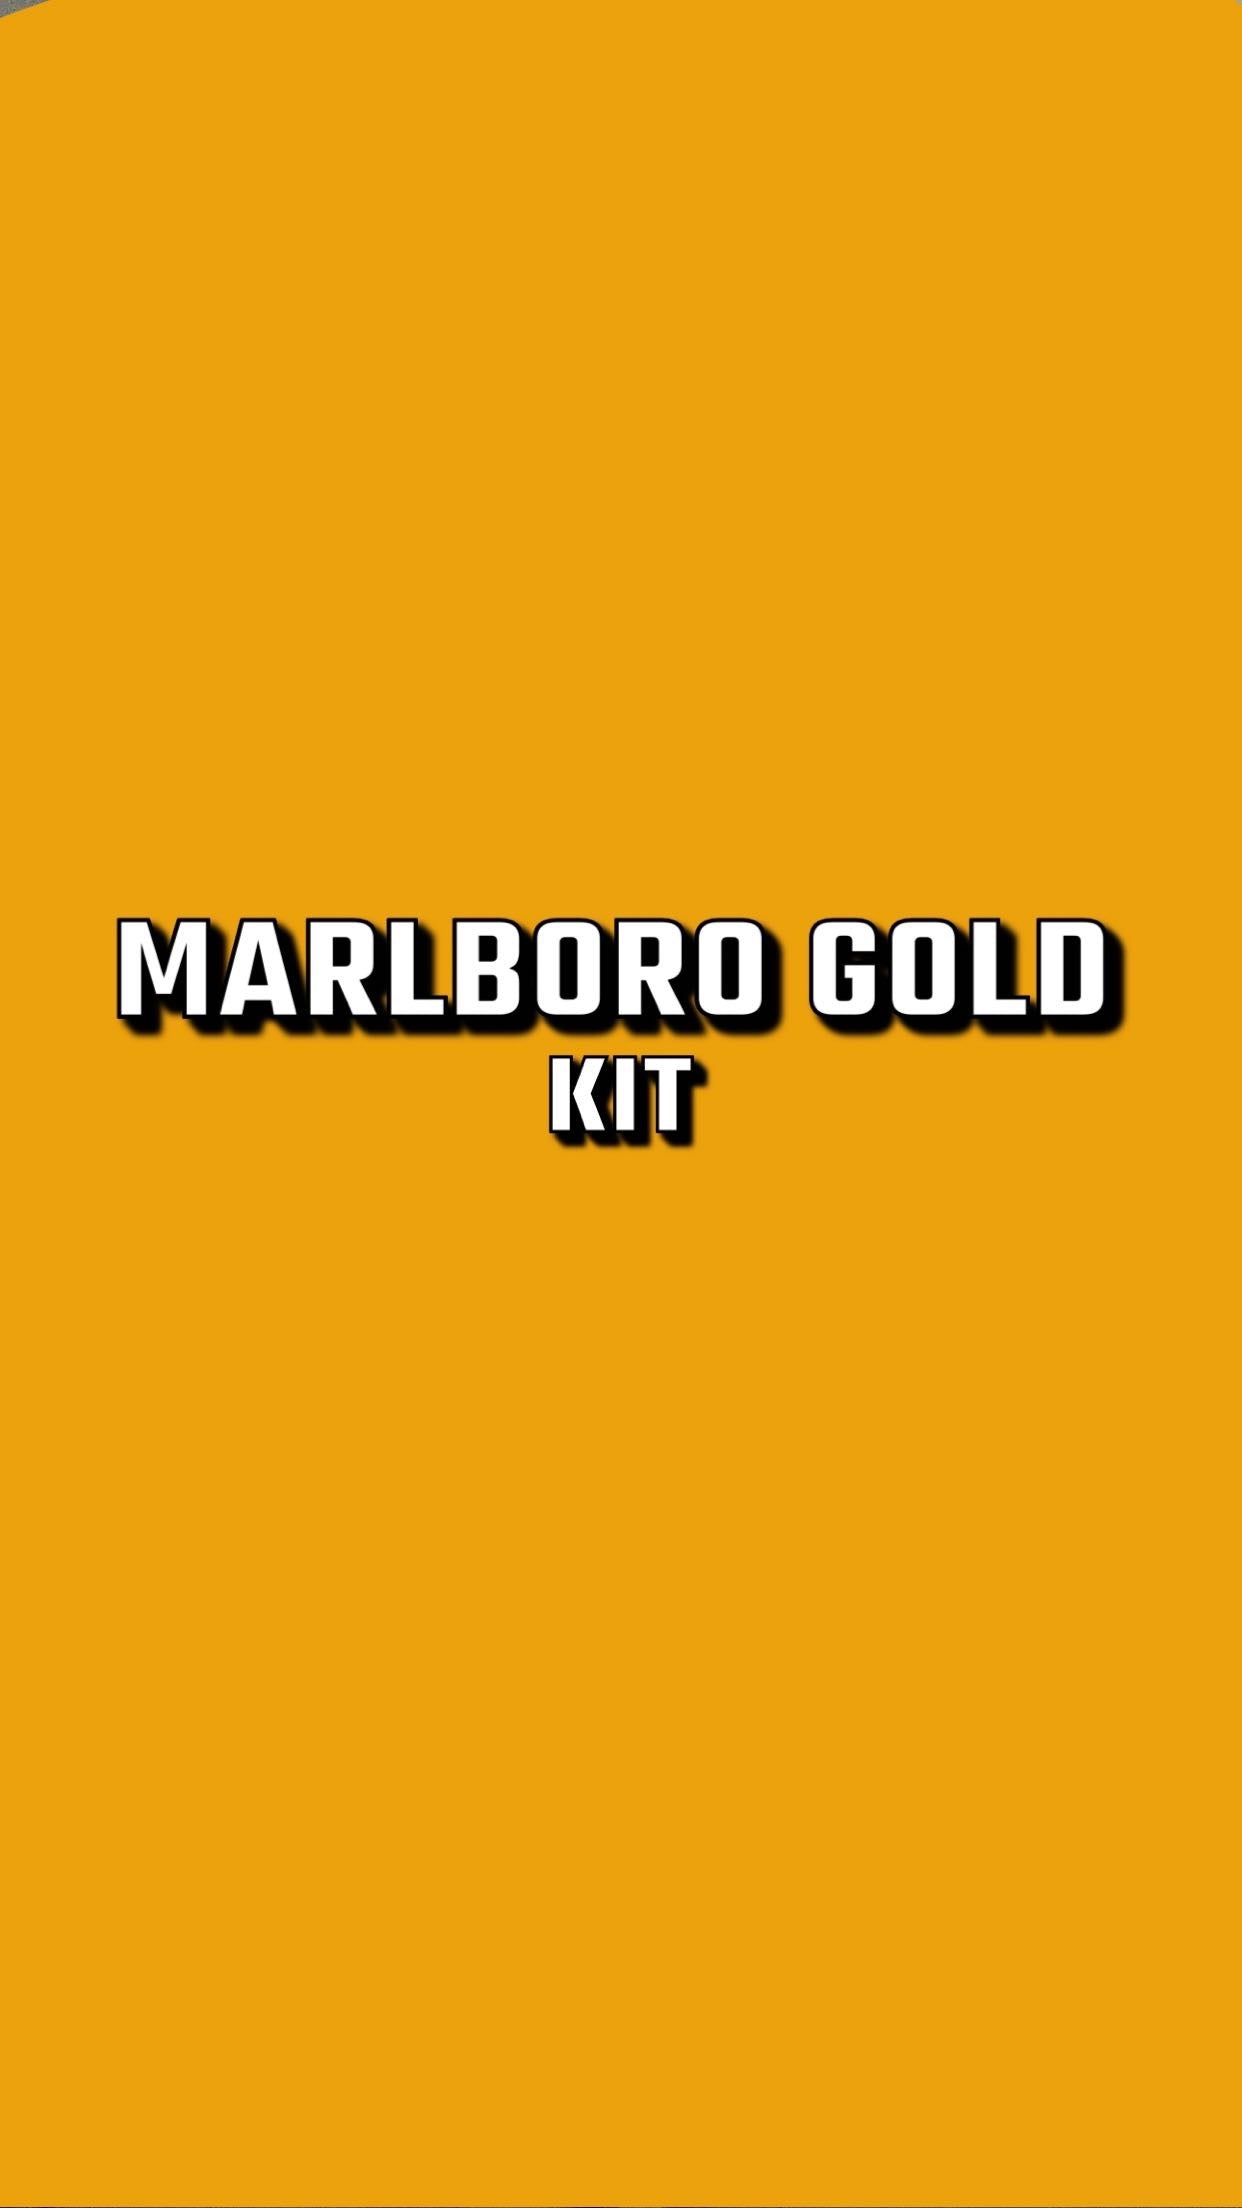 Marlboro gold KIT 16x20